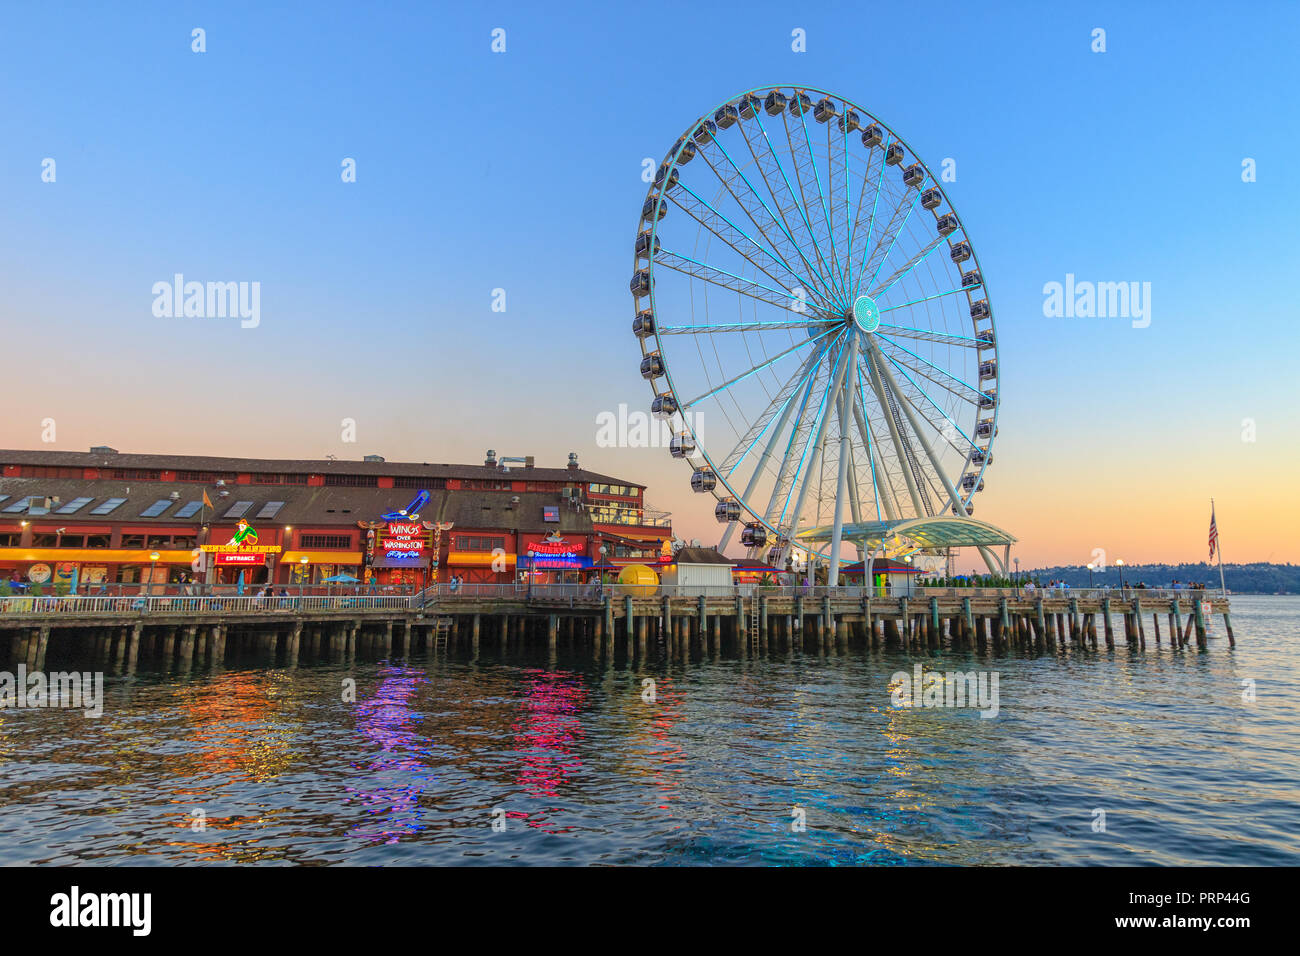 SEATTLE, WA, USA - 24 juillet : grande roue de Seattle et de Pier 57, le 24 juillet 2018 à Seattle, Washington. Banque D'Images